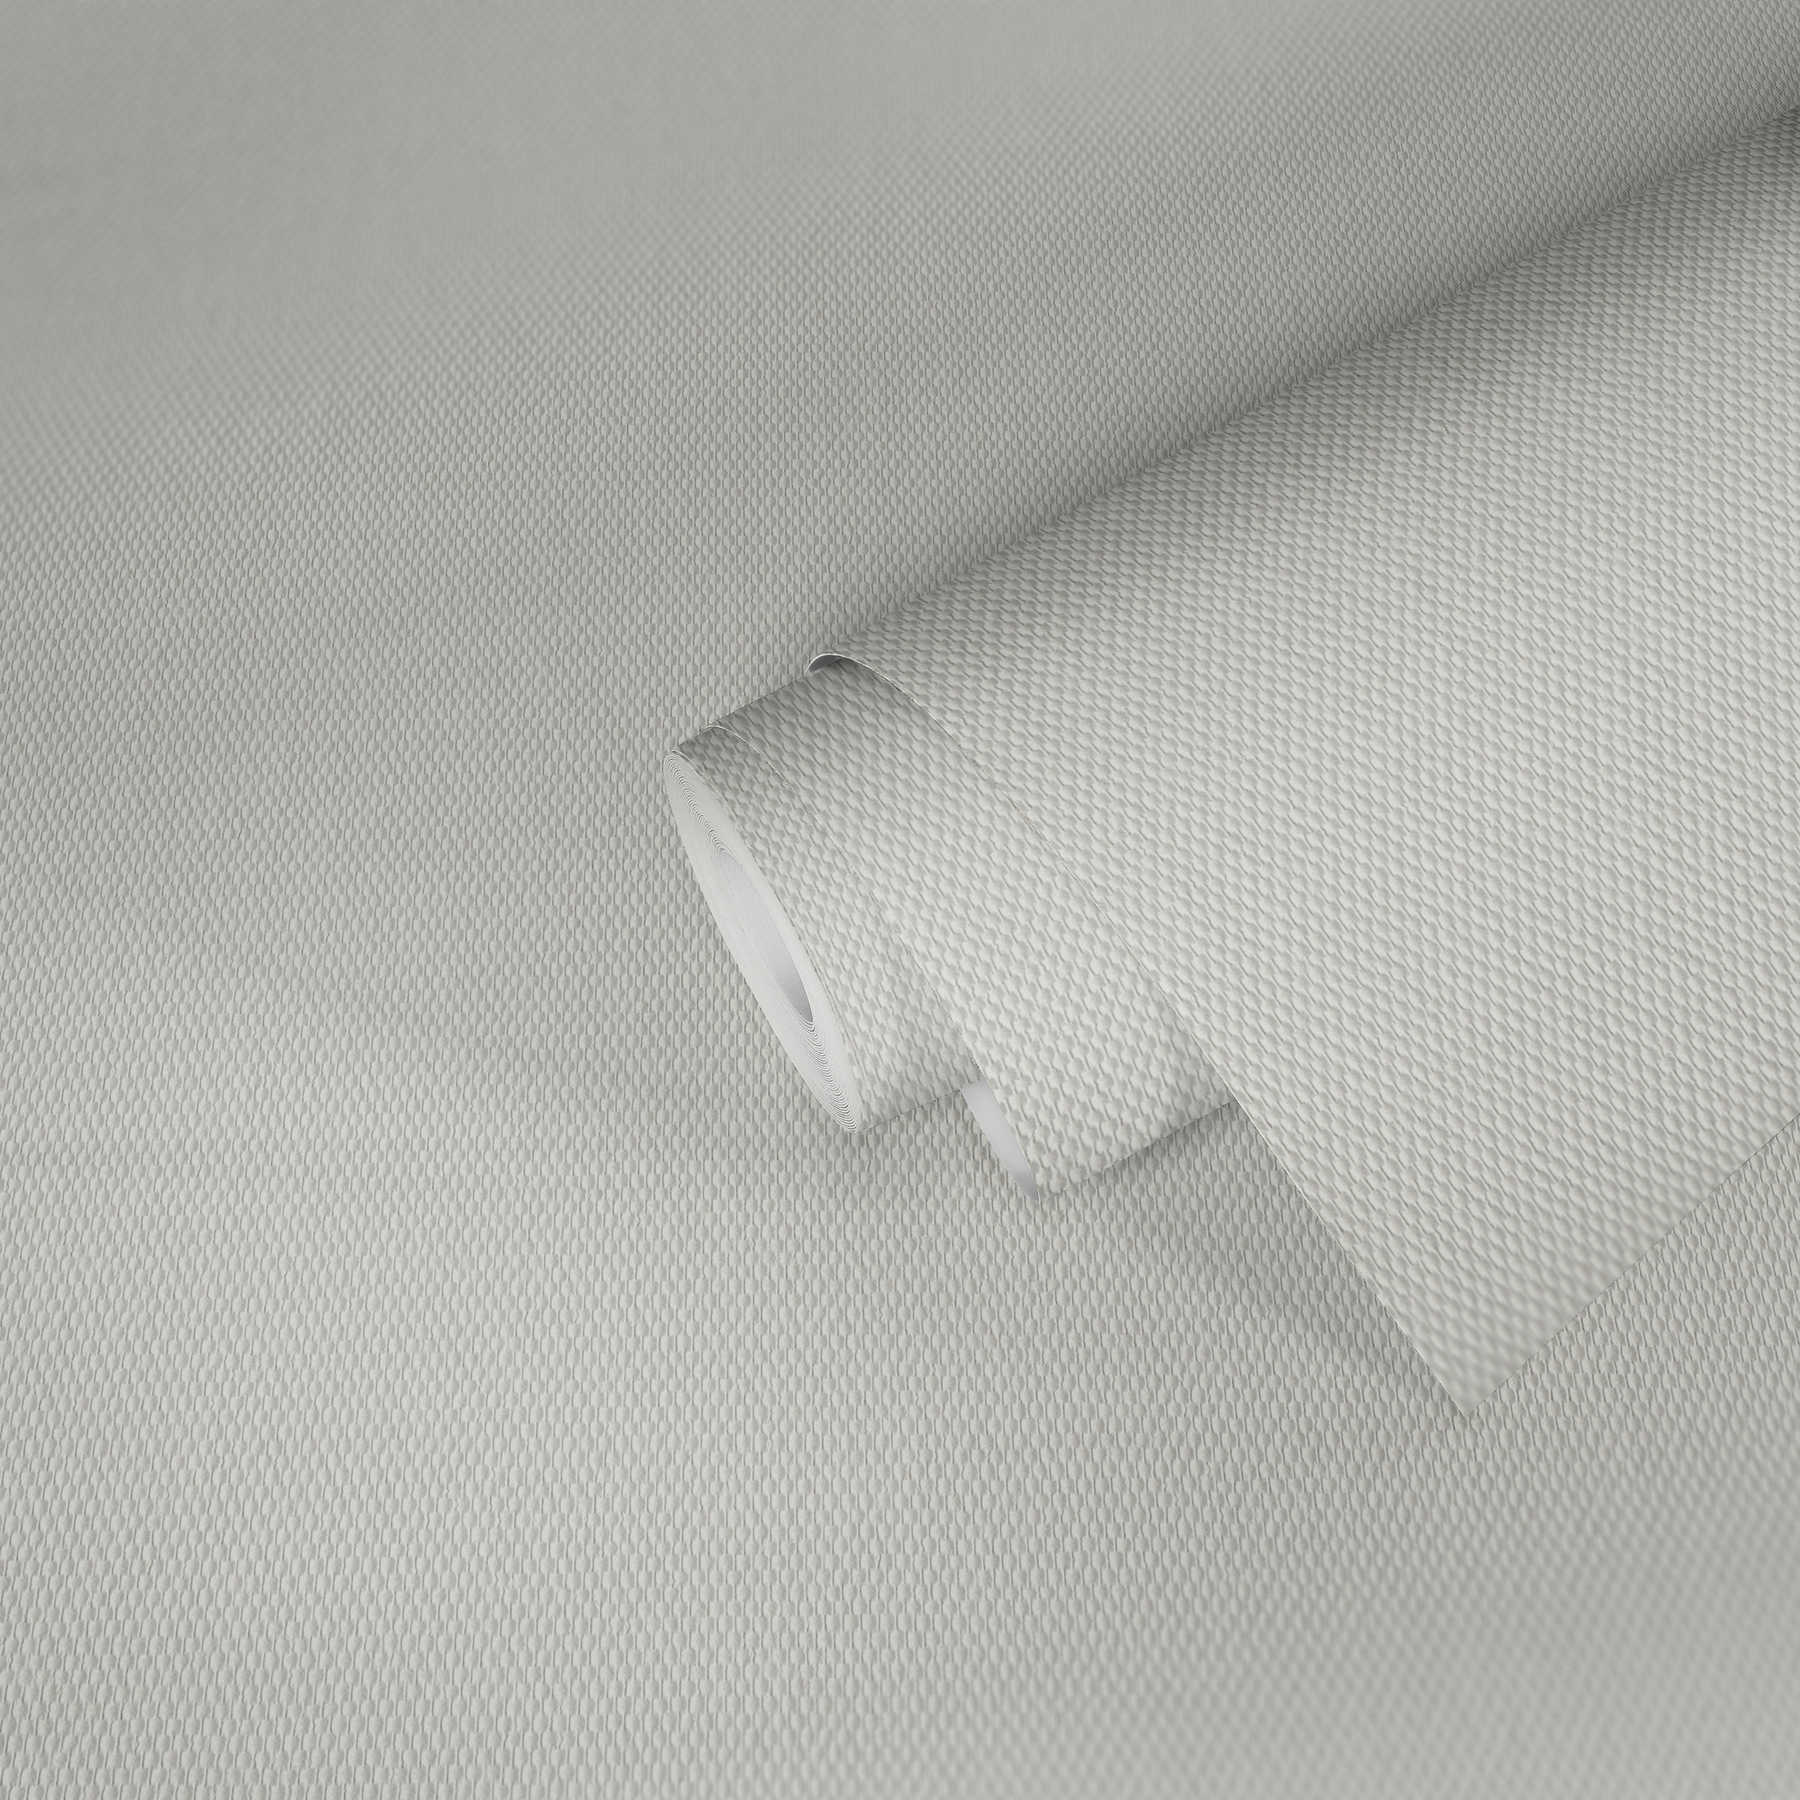             Glasfasertapete mit mittelgroßer Doppelkette – weiß pigmentiert vorgestrichen
        